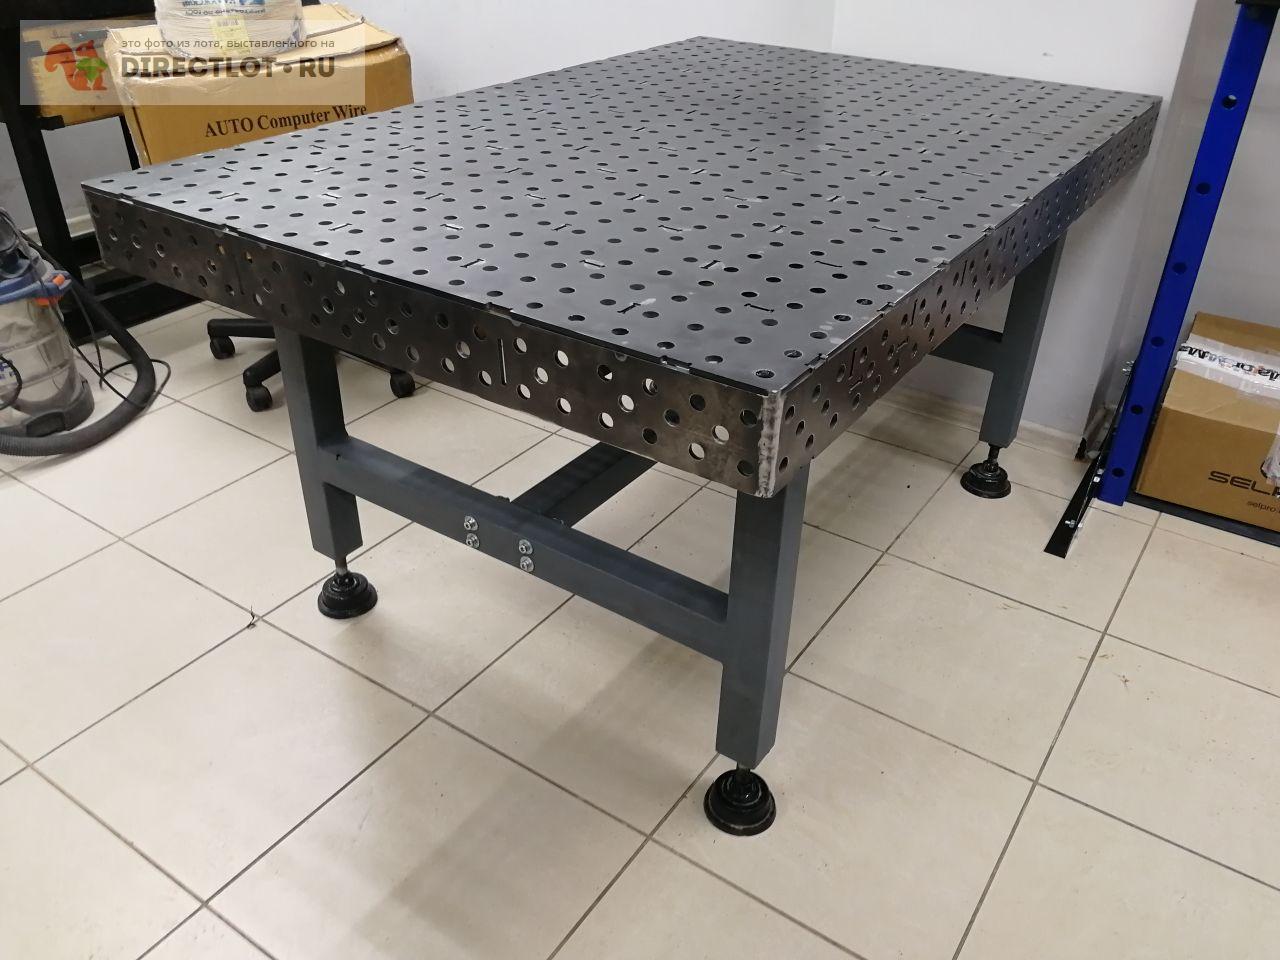 Сварочный стол L1500 x W1000   цена 117600 Р на DIRECTLOT .